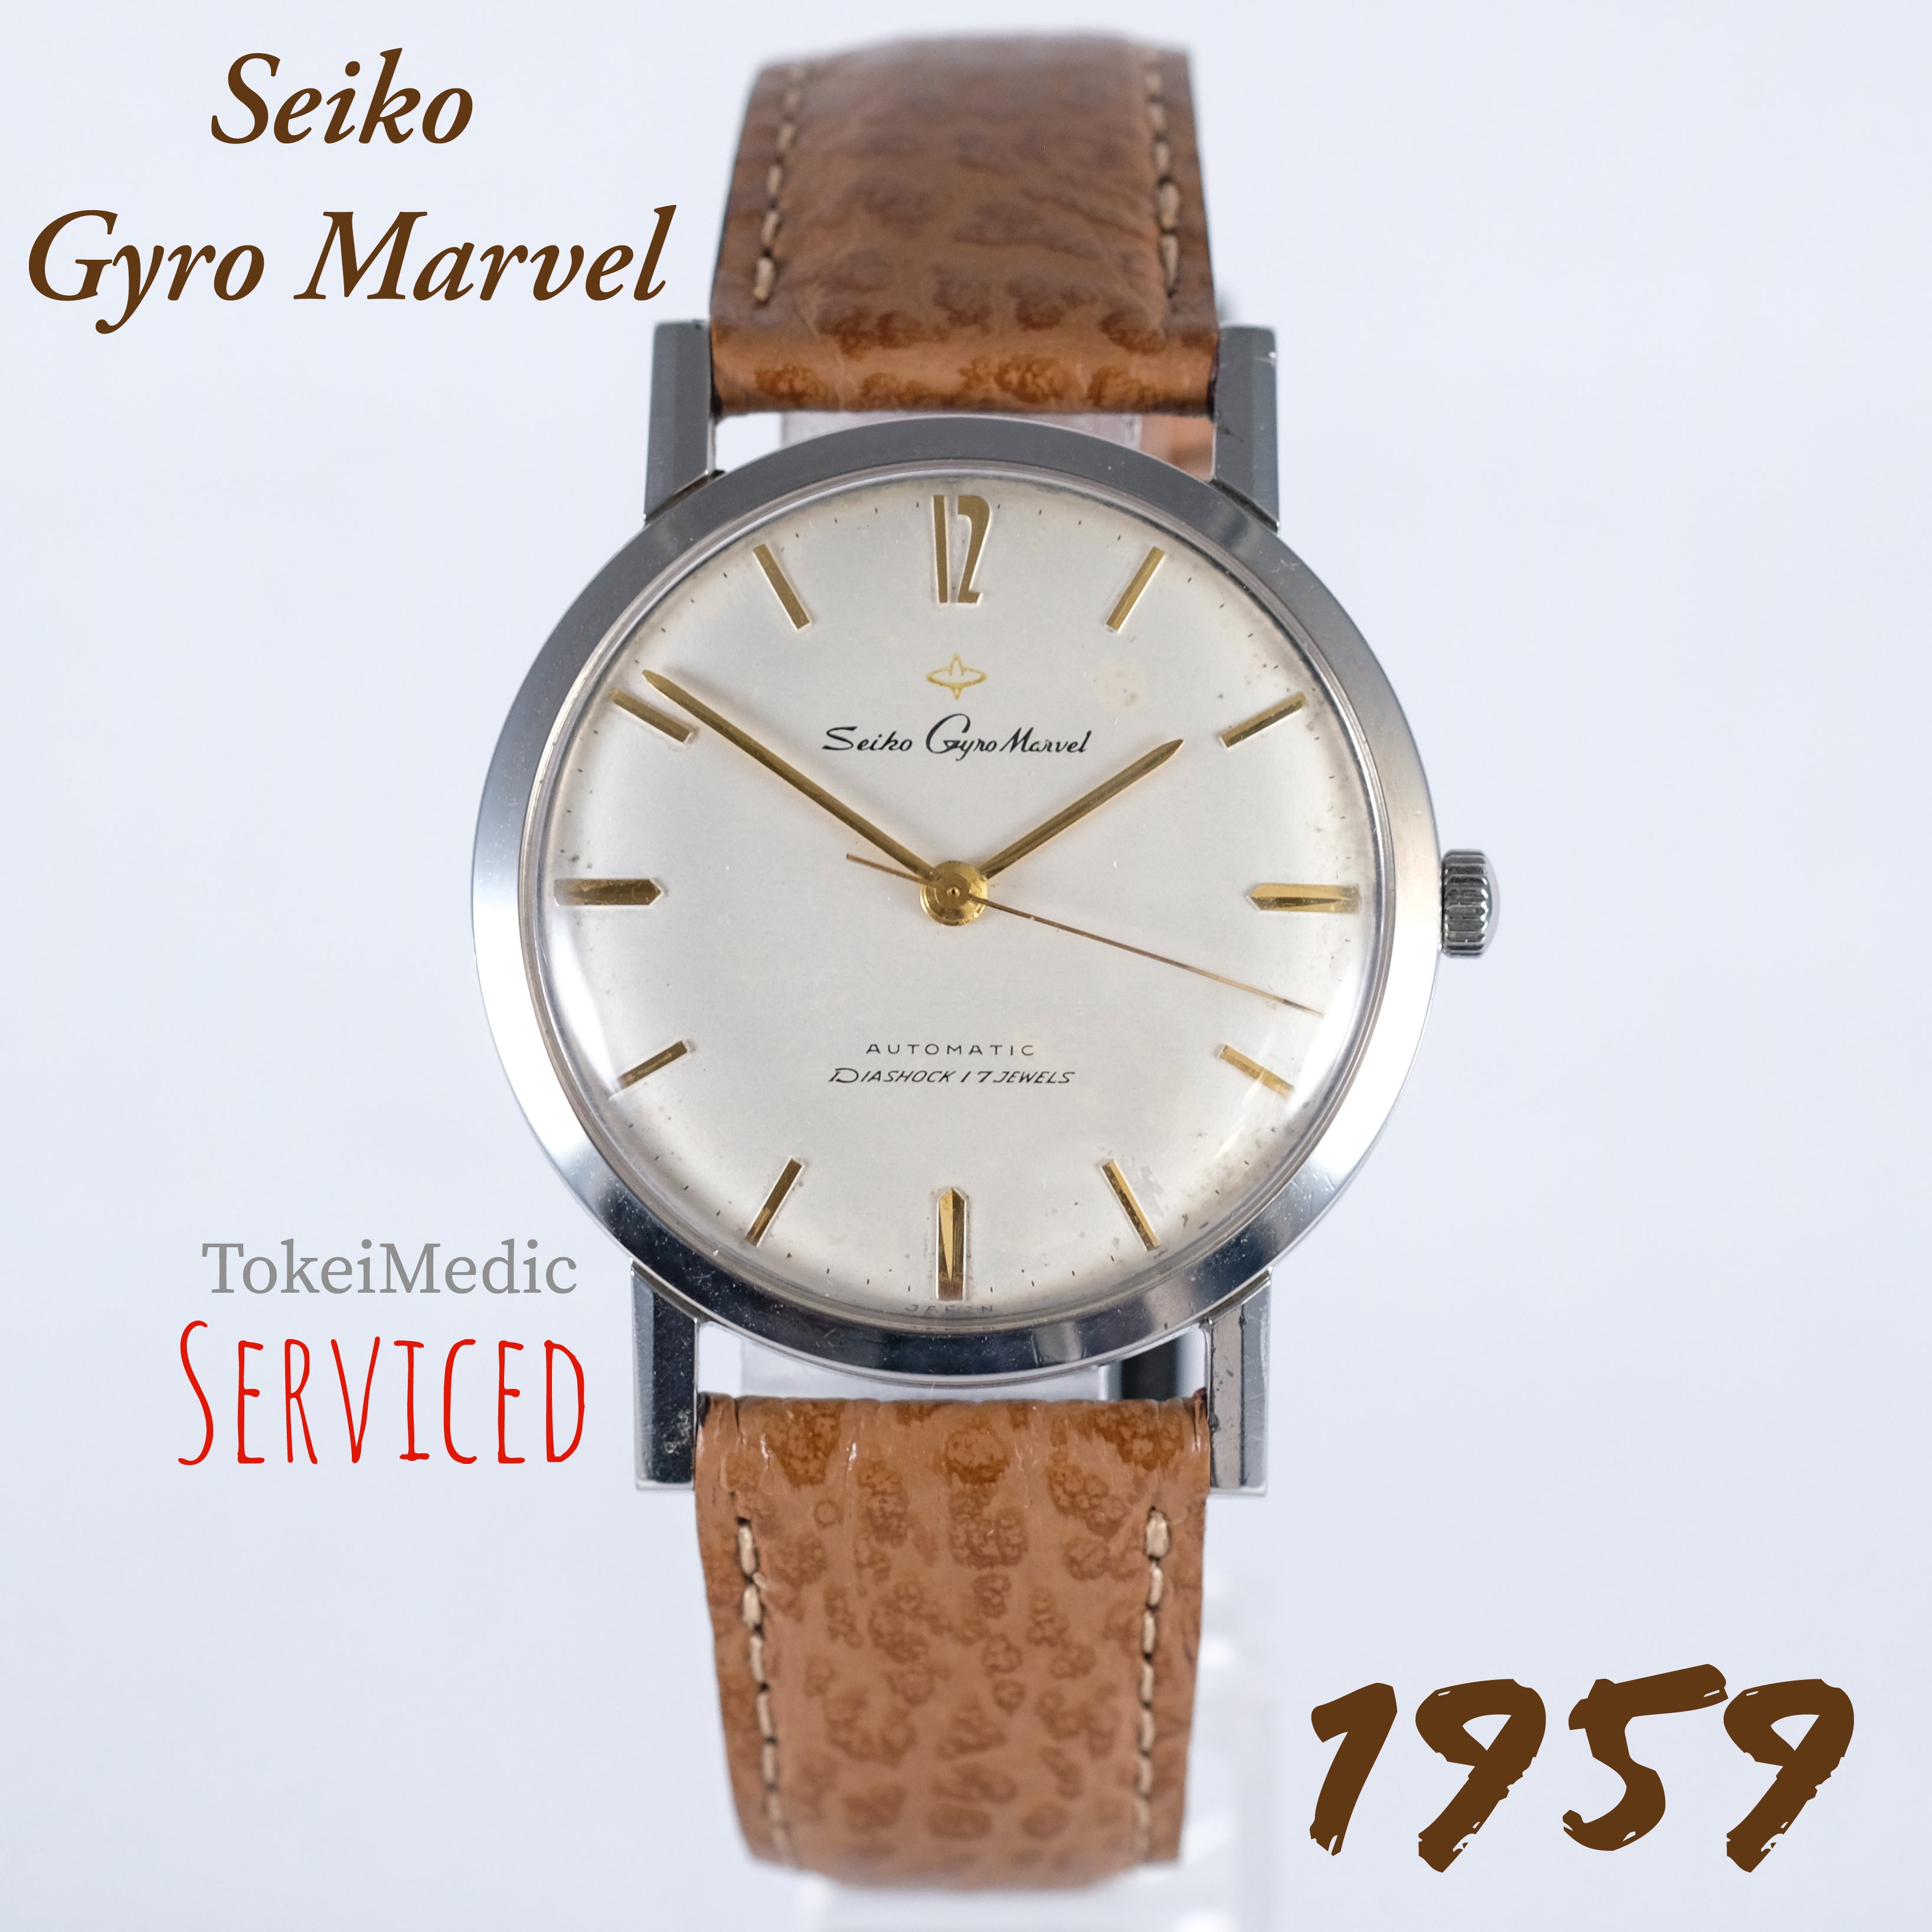 1959 Seiko Gyro Marvel ,First Seiko original automatic